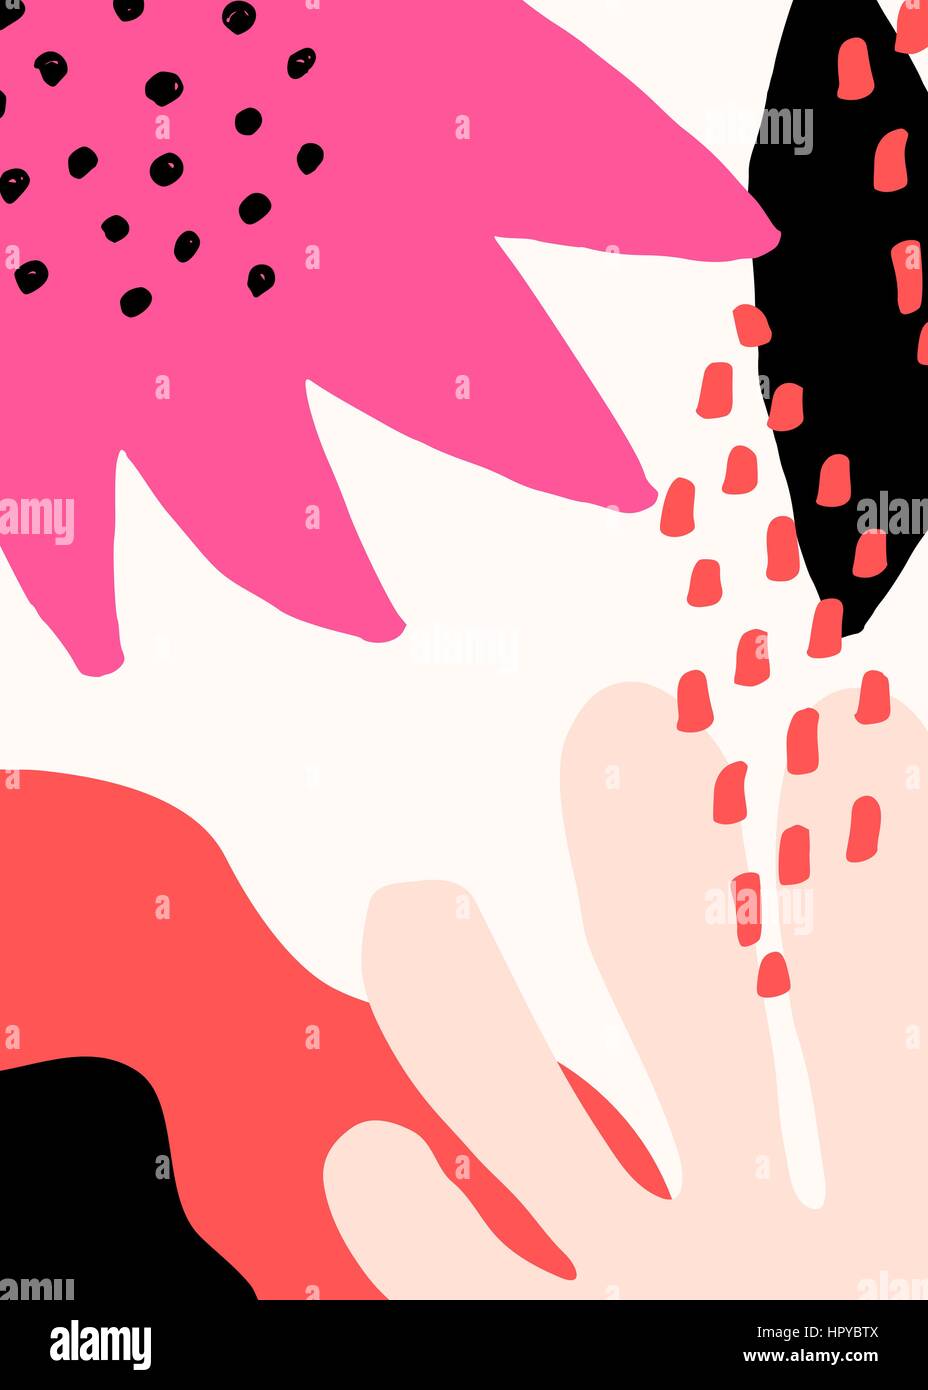 Collage stile design con abstract e forme organiche in rosa pastello, fucsia, rosso, nero e crema. Abstract tessile, la carta di avvolgimento, wall art design Illustrazione Vettoriale